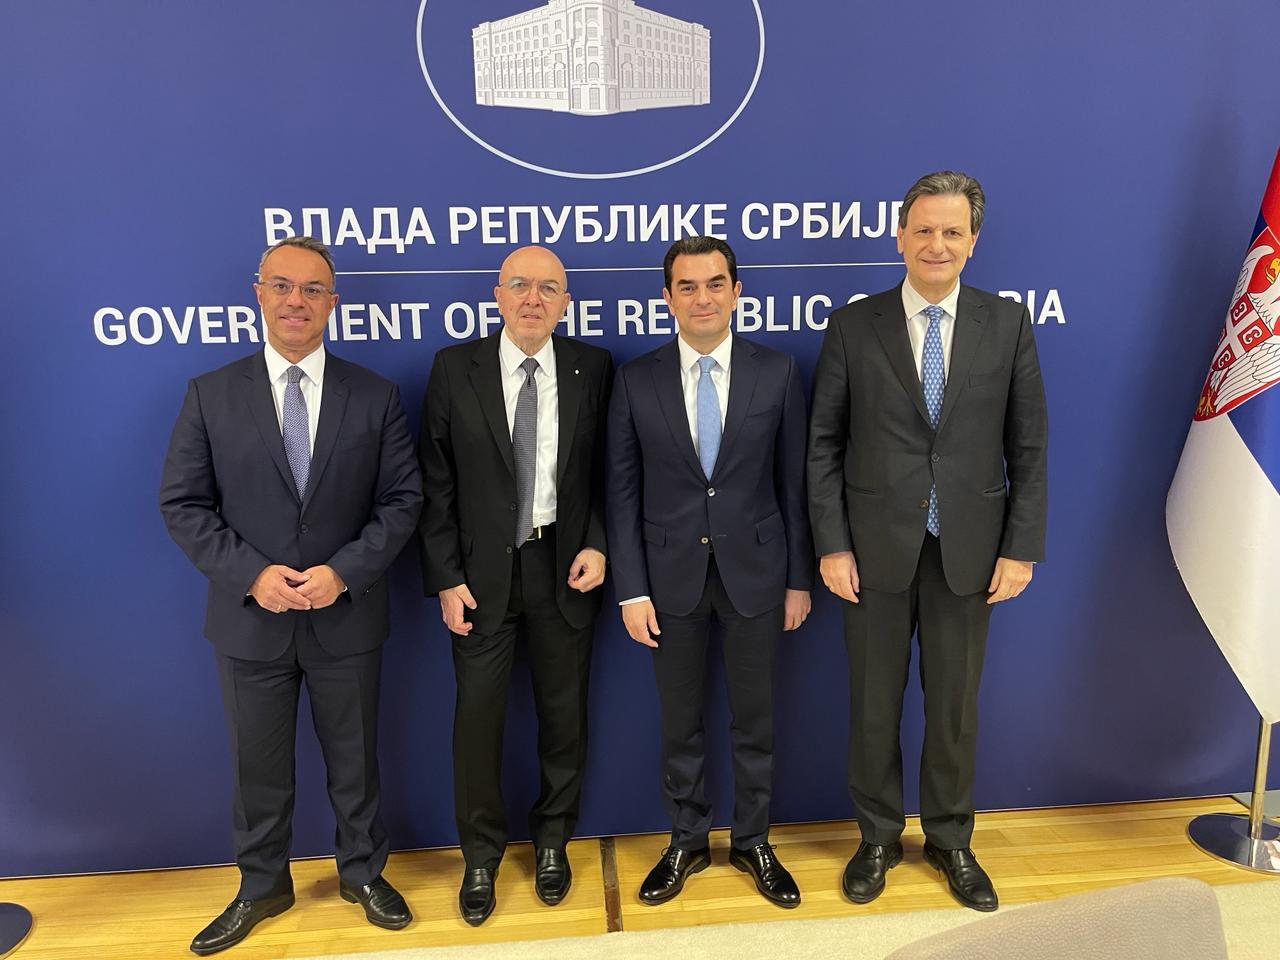 Στη Σερβία με τον Πρωθυπουργό ο Κ.Σκρέκας, για την προώθηση των οικονομικών και επενδυτικών σχέσεων των δύο χωρών